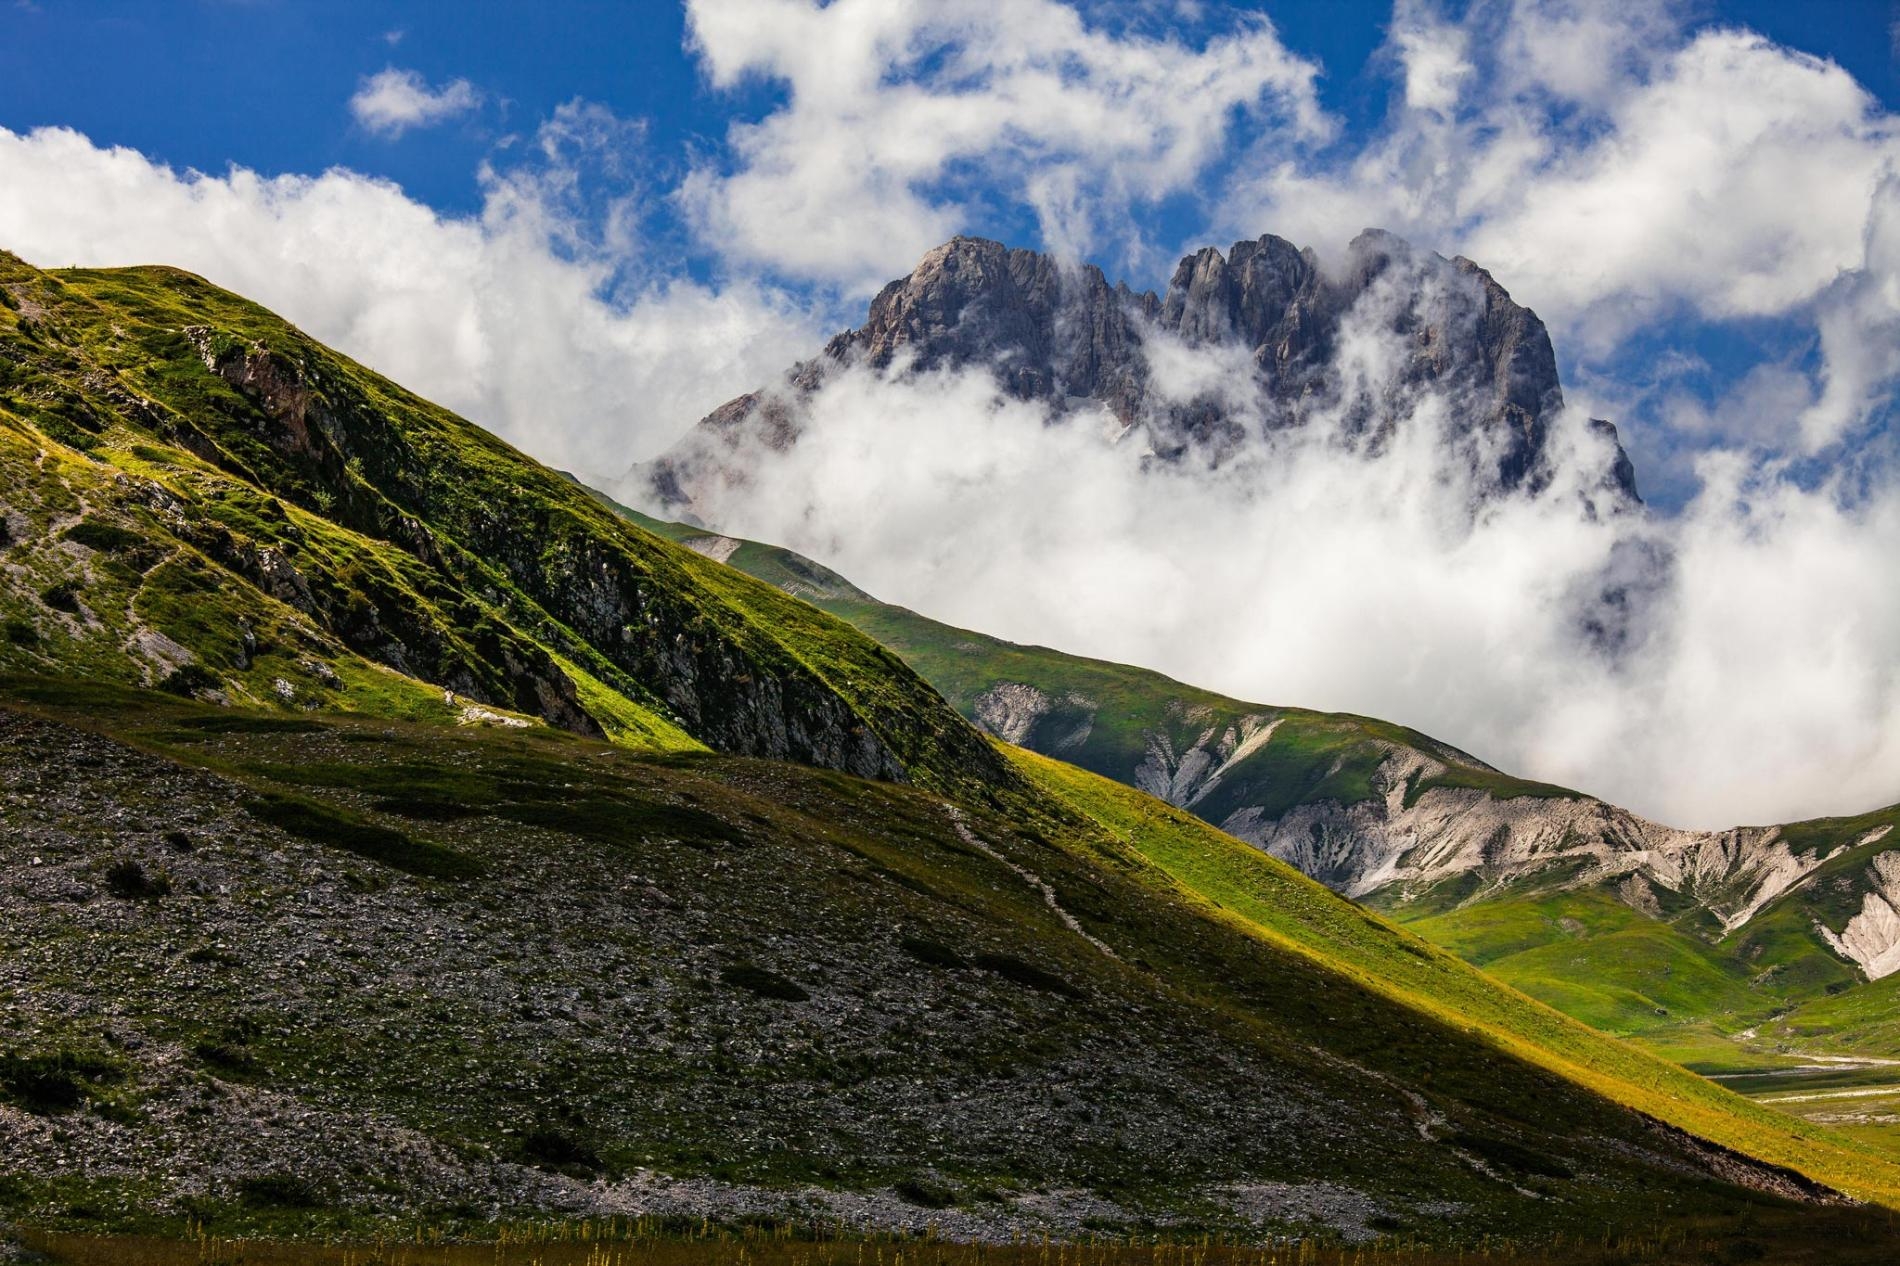 大科爾諾峰（Corno Grande）矗立在白雲之間，是亞平寧山脈（Apennine Mountains）的最高峰。對於地殼構造的調查顯示，位在義大利中部的亞平寧山脈是大亞德里亞古大陸（Greater Adria）被削去陸塊的一部分殘骸。PHOTOGRAPH BY GUIDO PARADISI, ALAMY STOCK PHOTO